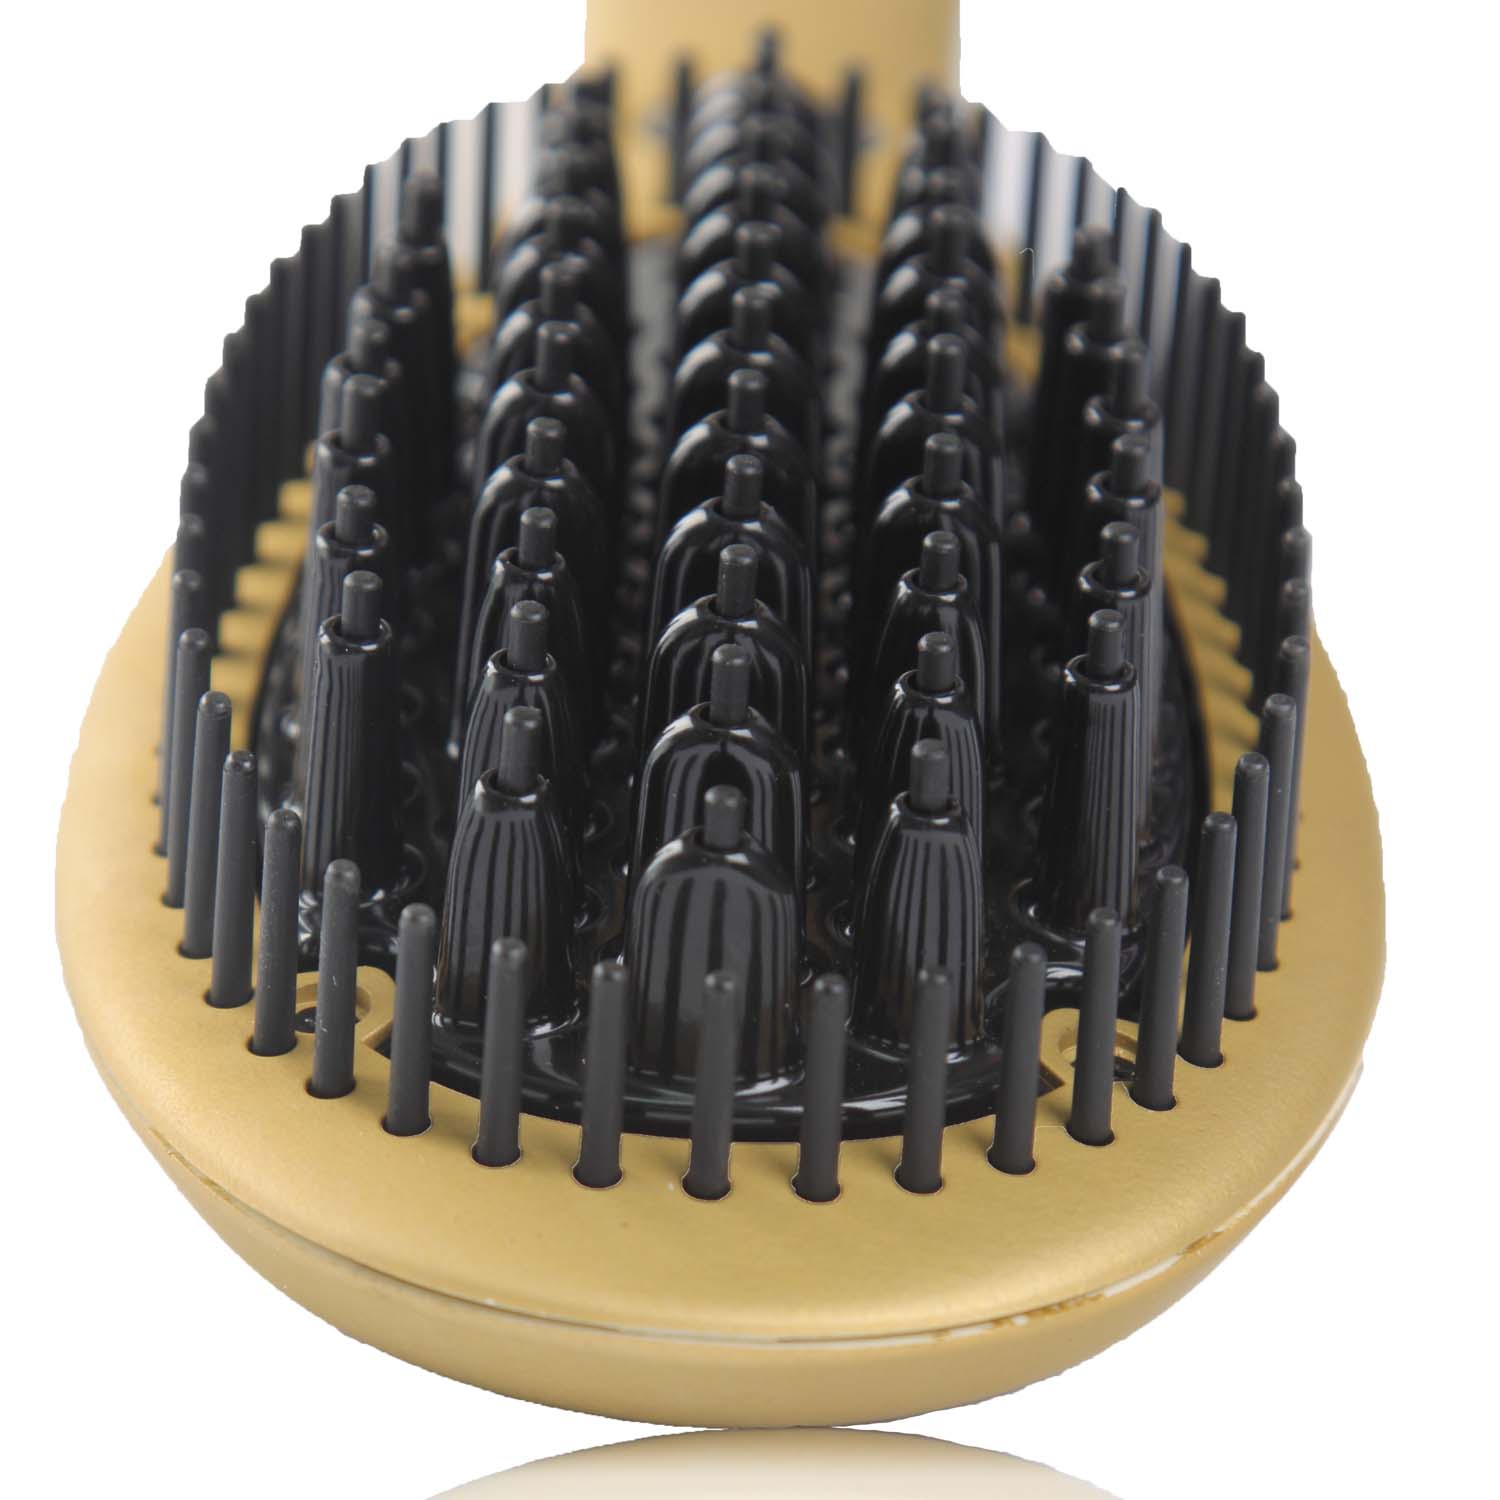 Hair Straightener Nano Comb